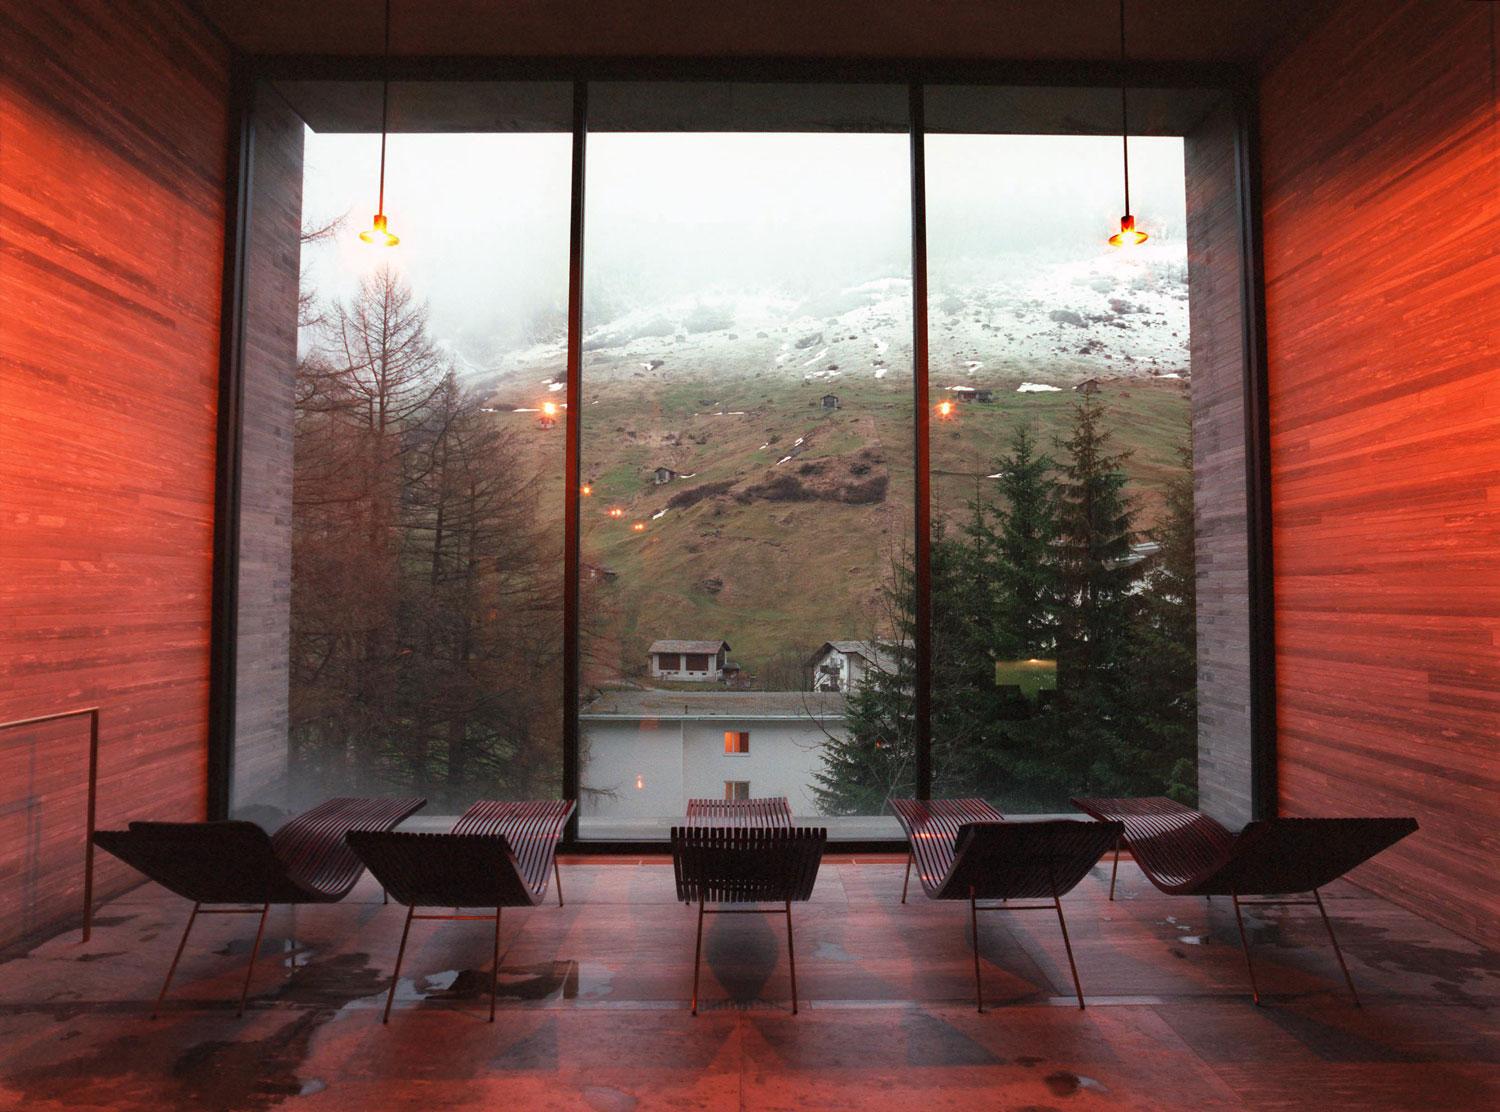 Relaxa med utsikt på Therme Spa i Vals.